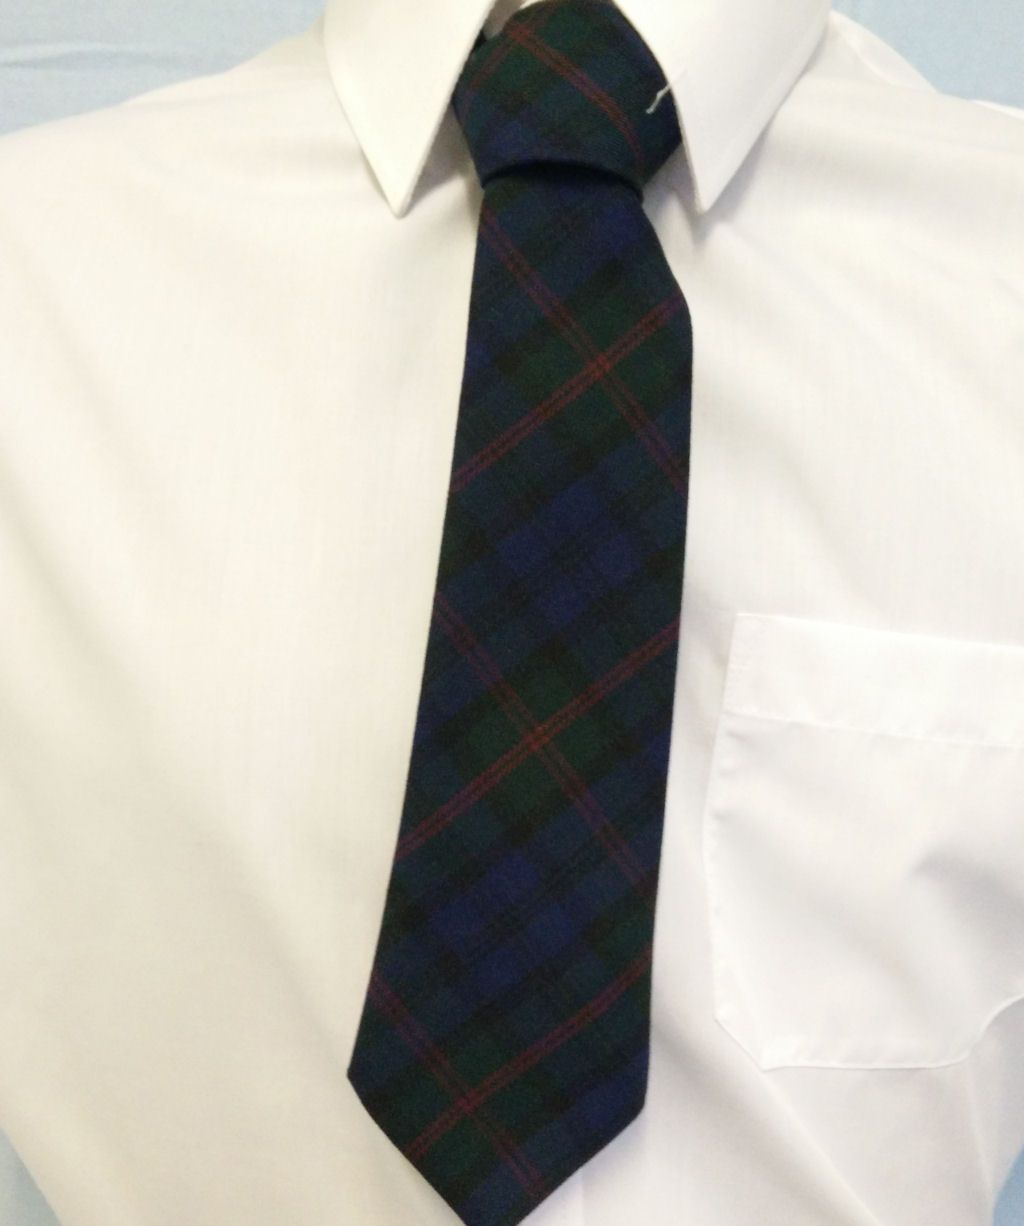 Teign School Tie